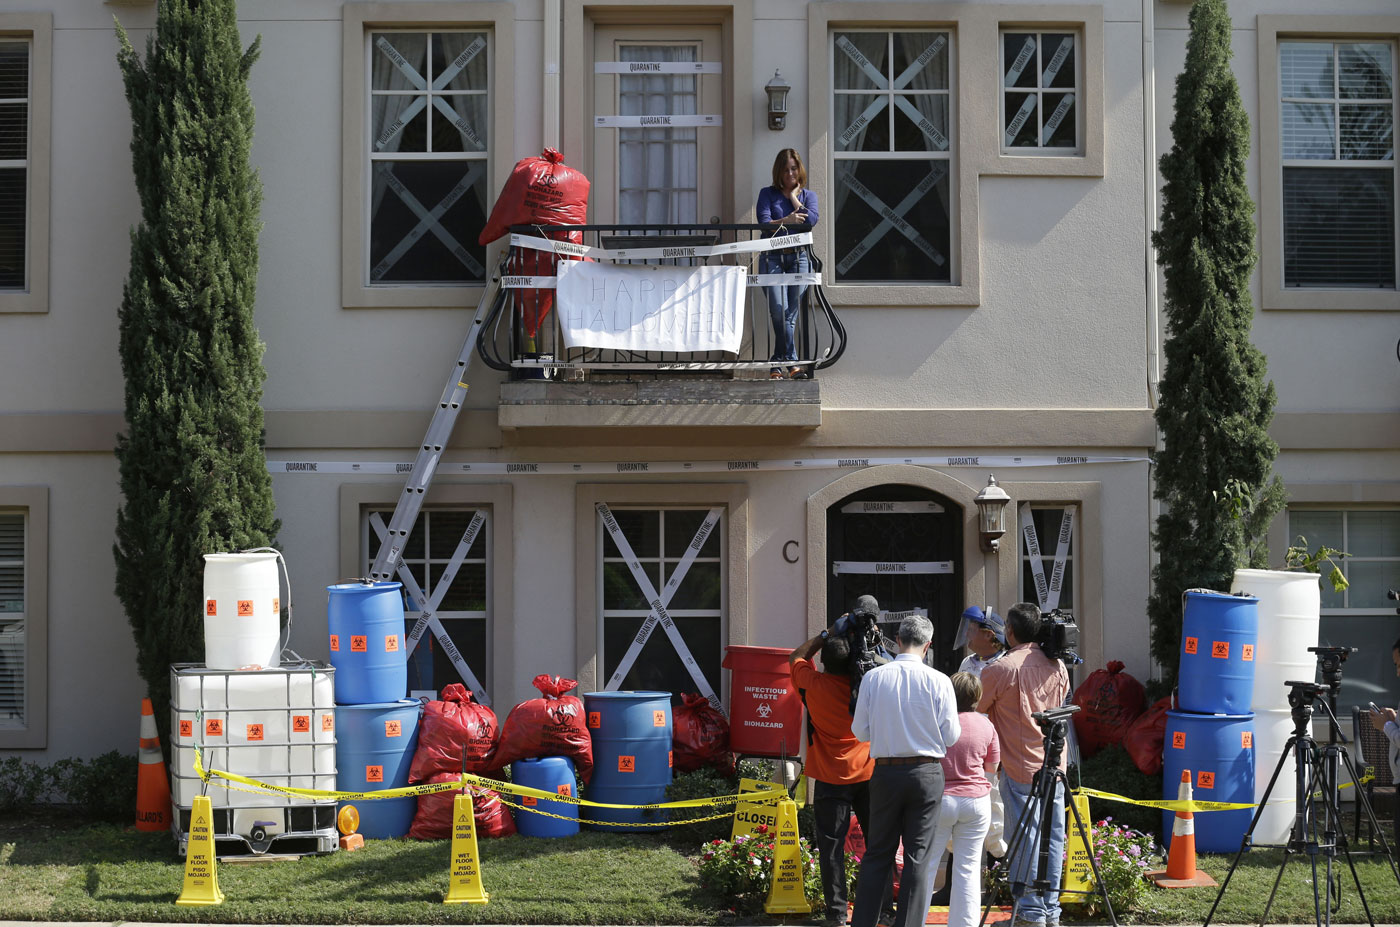 Se inspiró en el ébola para decorar su casa para Halloween (Foto)